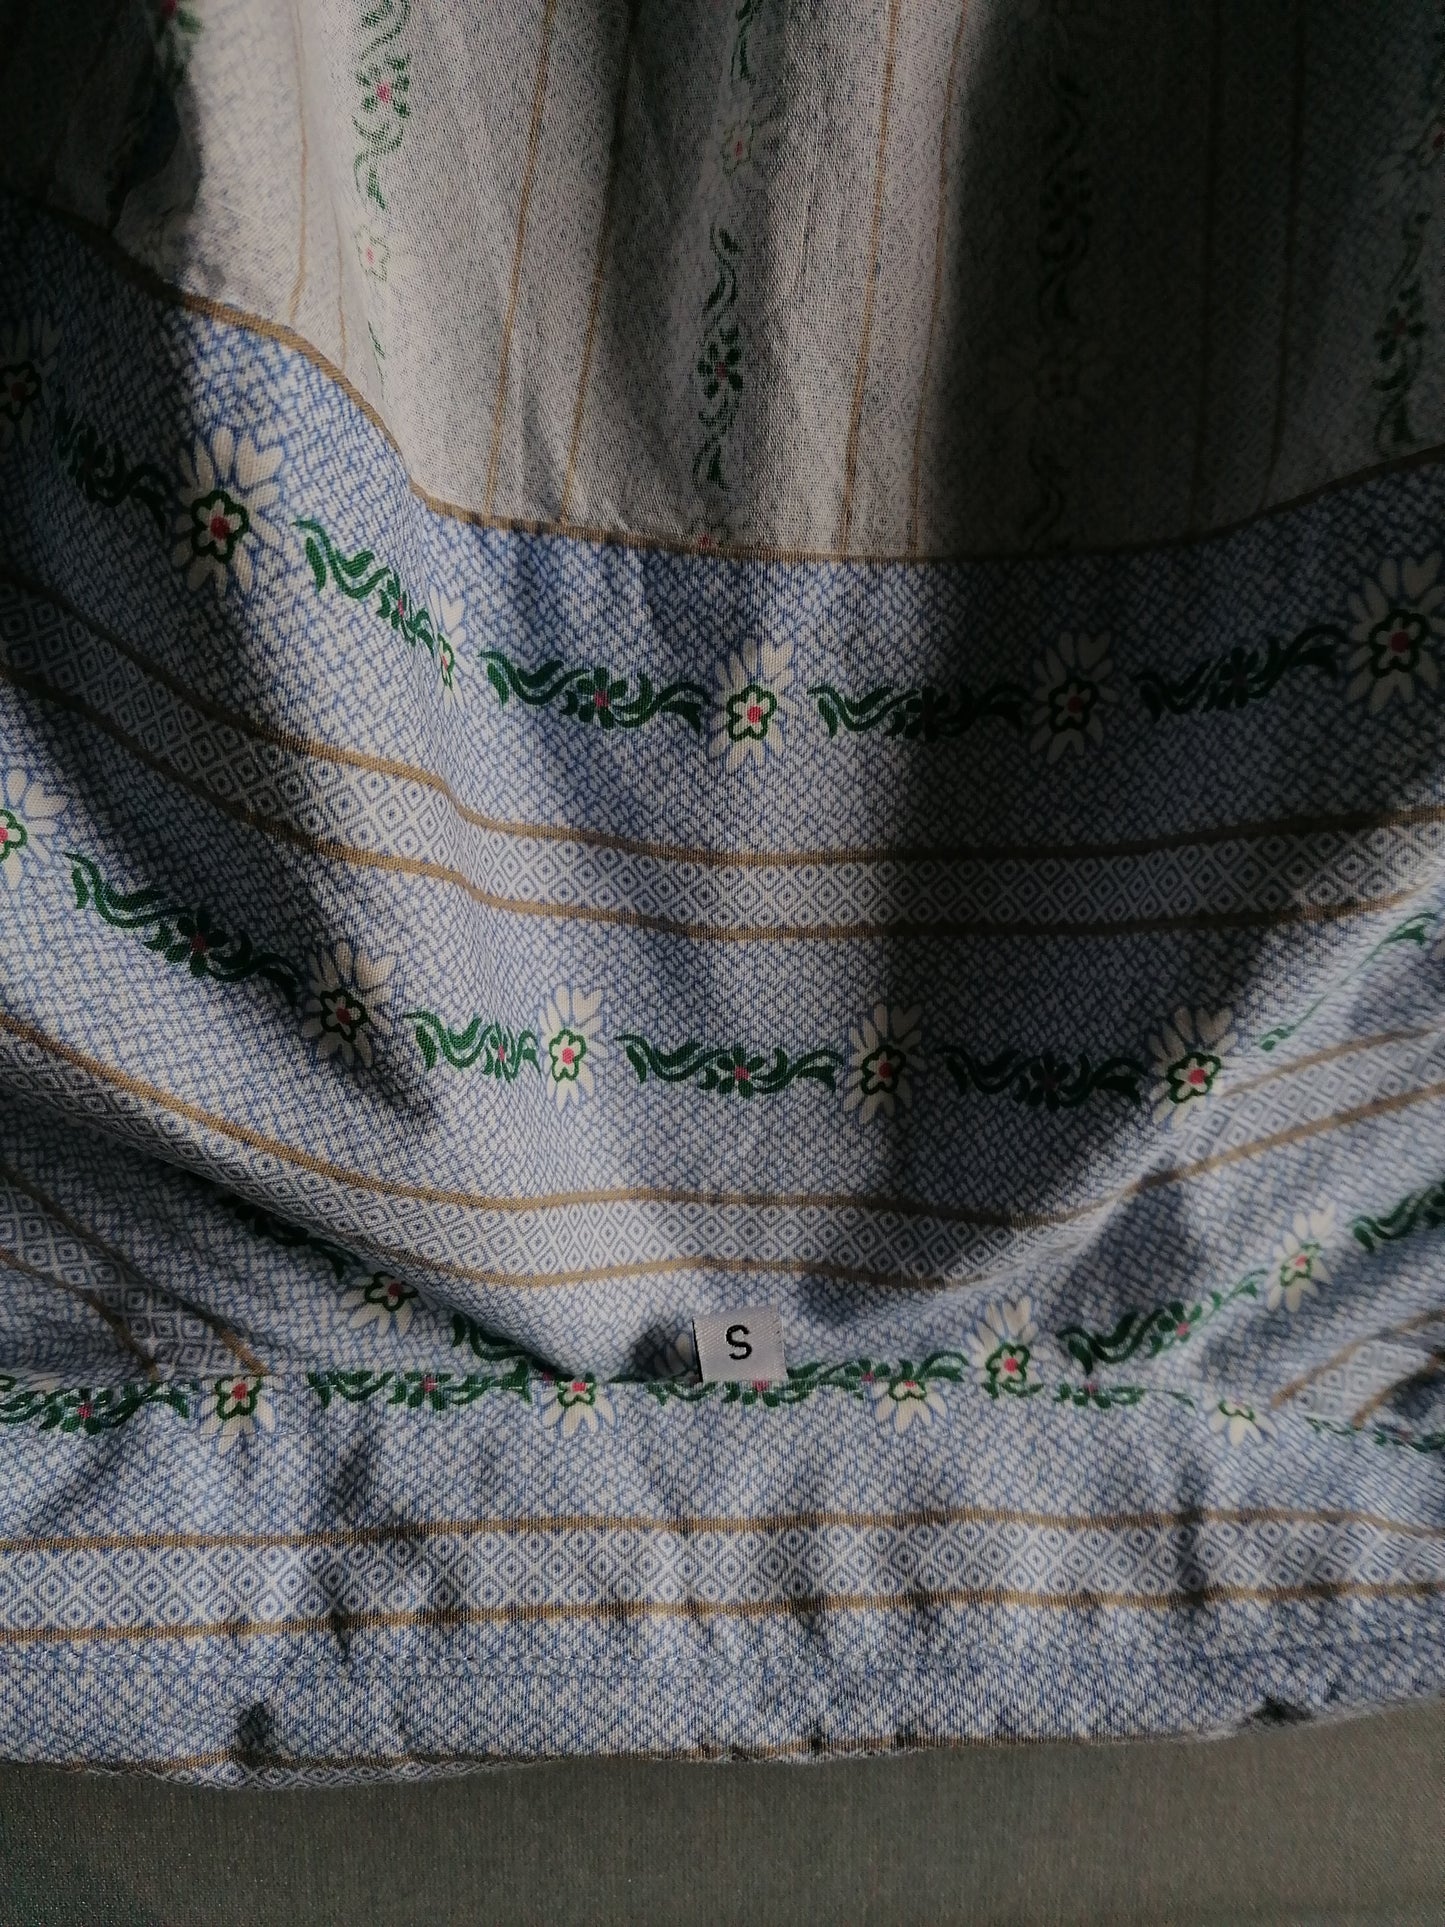 Vintage Eichhof Shirt. Impresión de patrón floral verde blanco azul. Tamaño S.